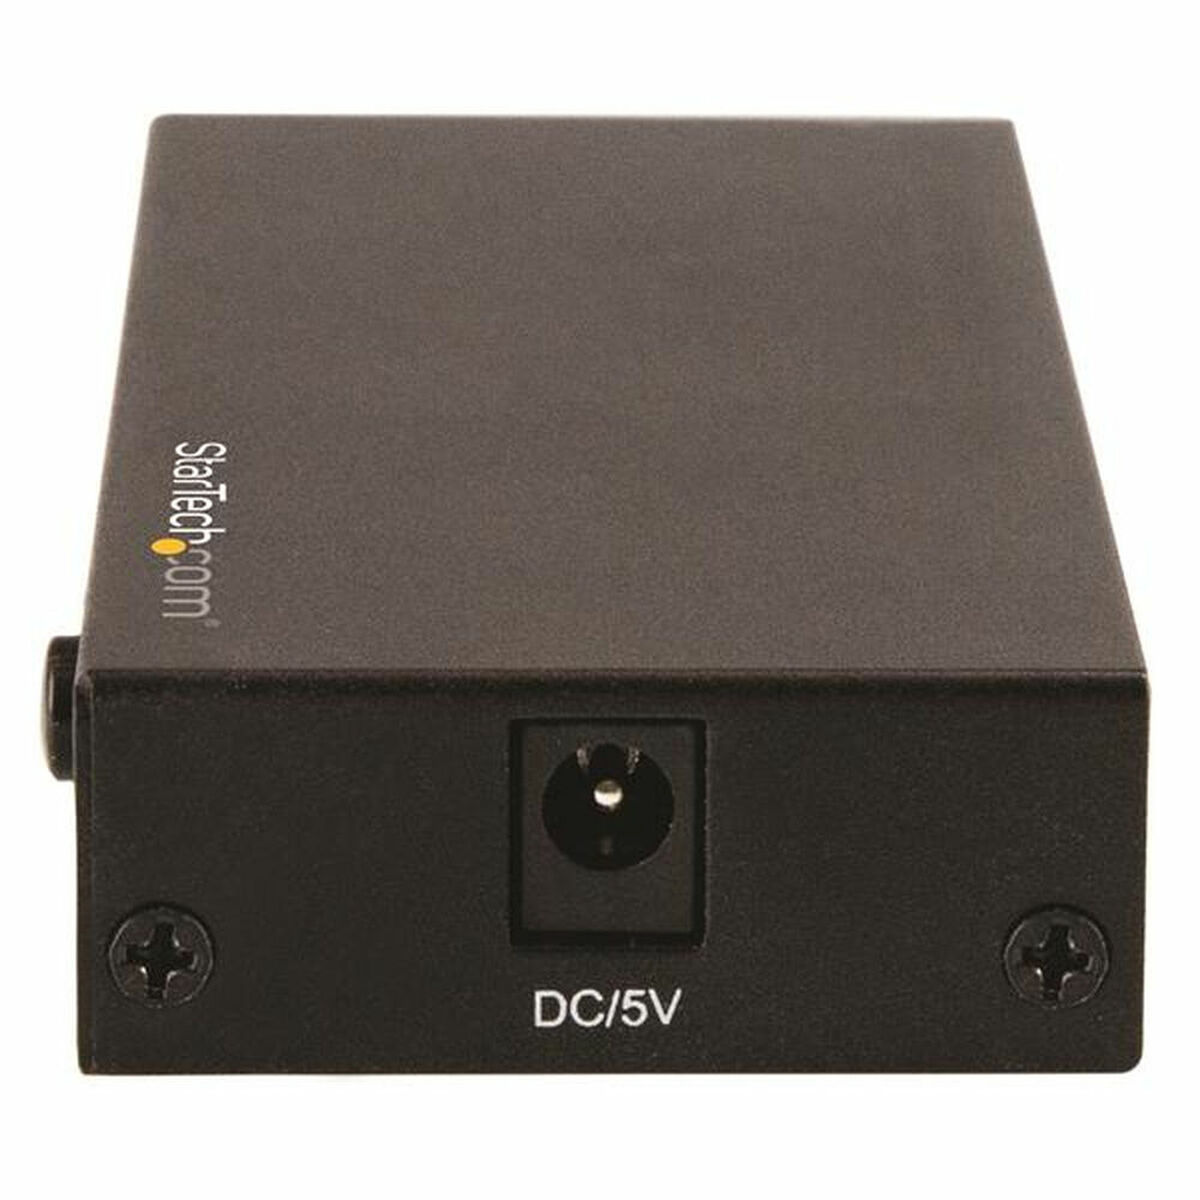 HDMI switch Startech VS421HD20            Black